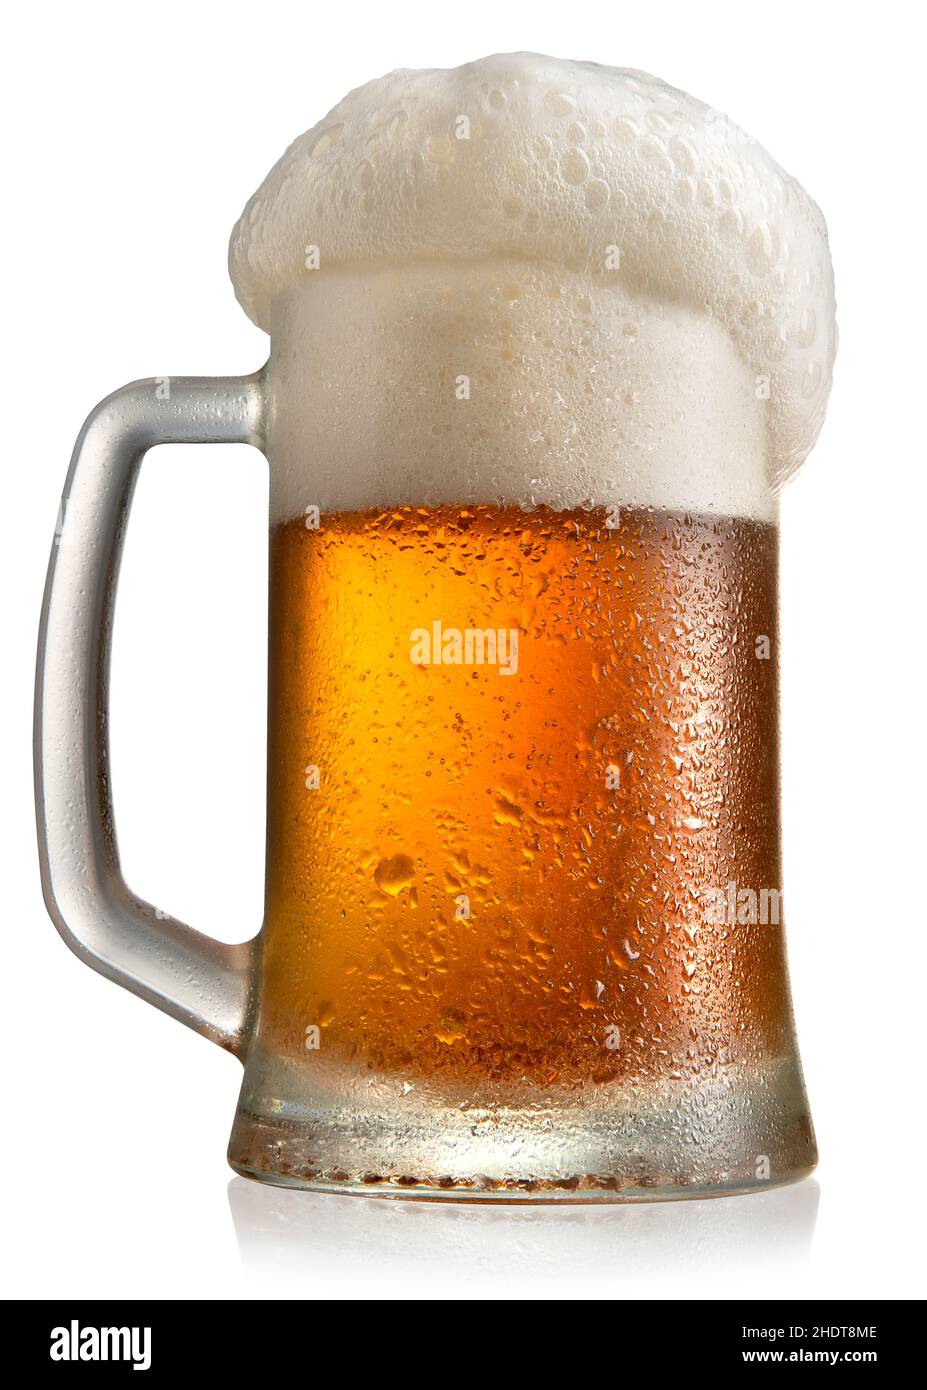 Alkohol, Bier, Bier stein, Alkohole, Biere, Bier steins Stockfoto